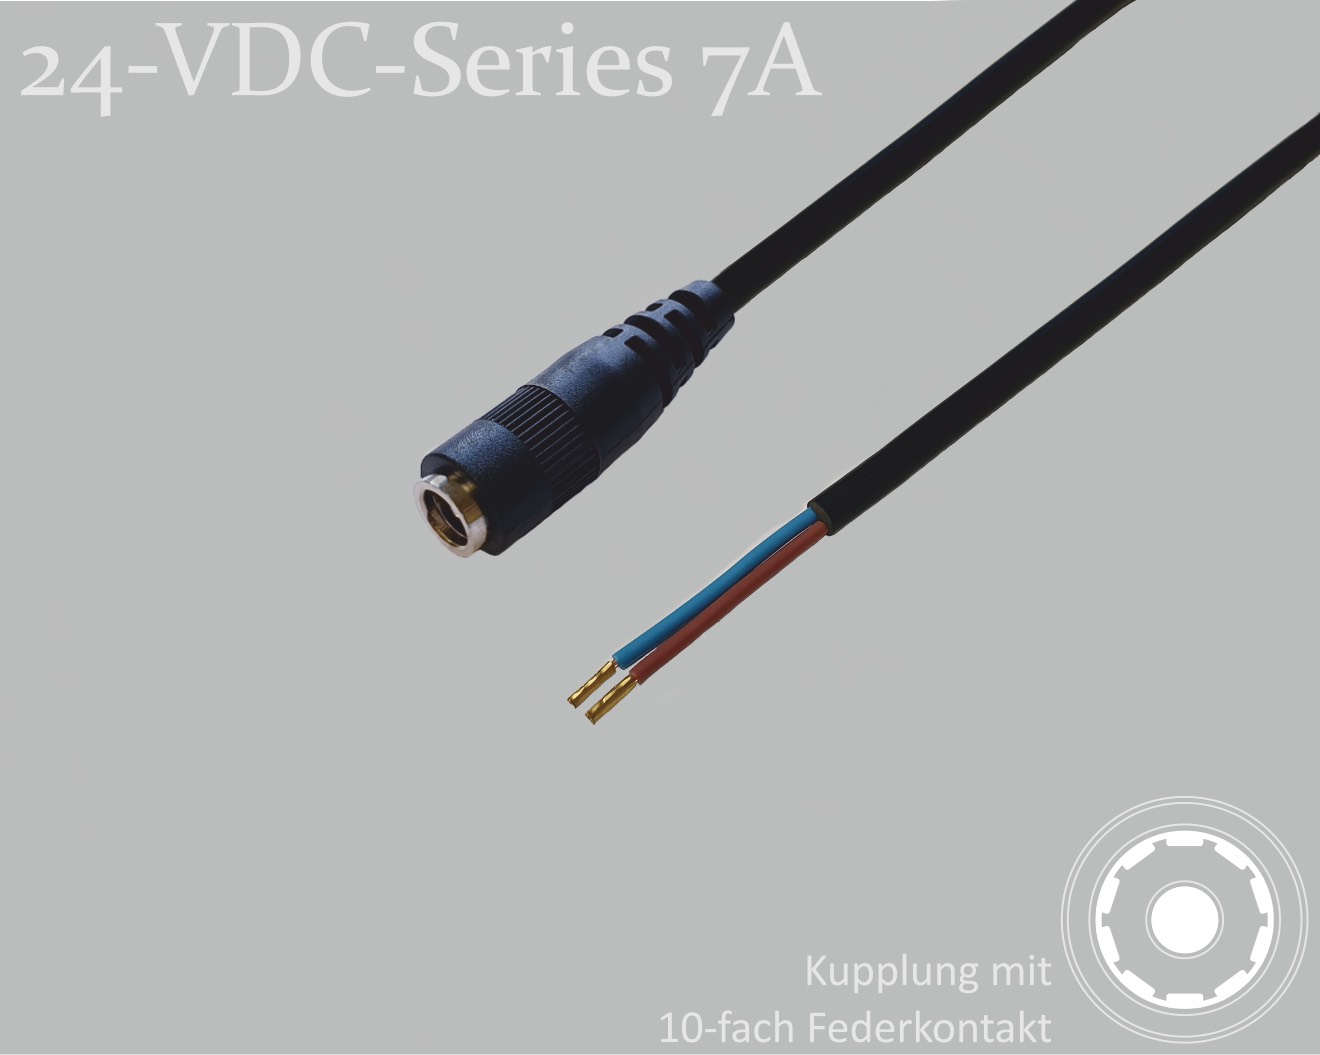 24-VDC-Series 7A, DC-Anschlusskabel, DC-Kupplung mit 10-Federkontakt 2,5x5,5mm, Rundkabel 2x0,50mm², schwarz, Aderendhülsen, 1,5m